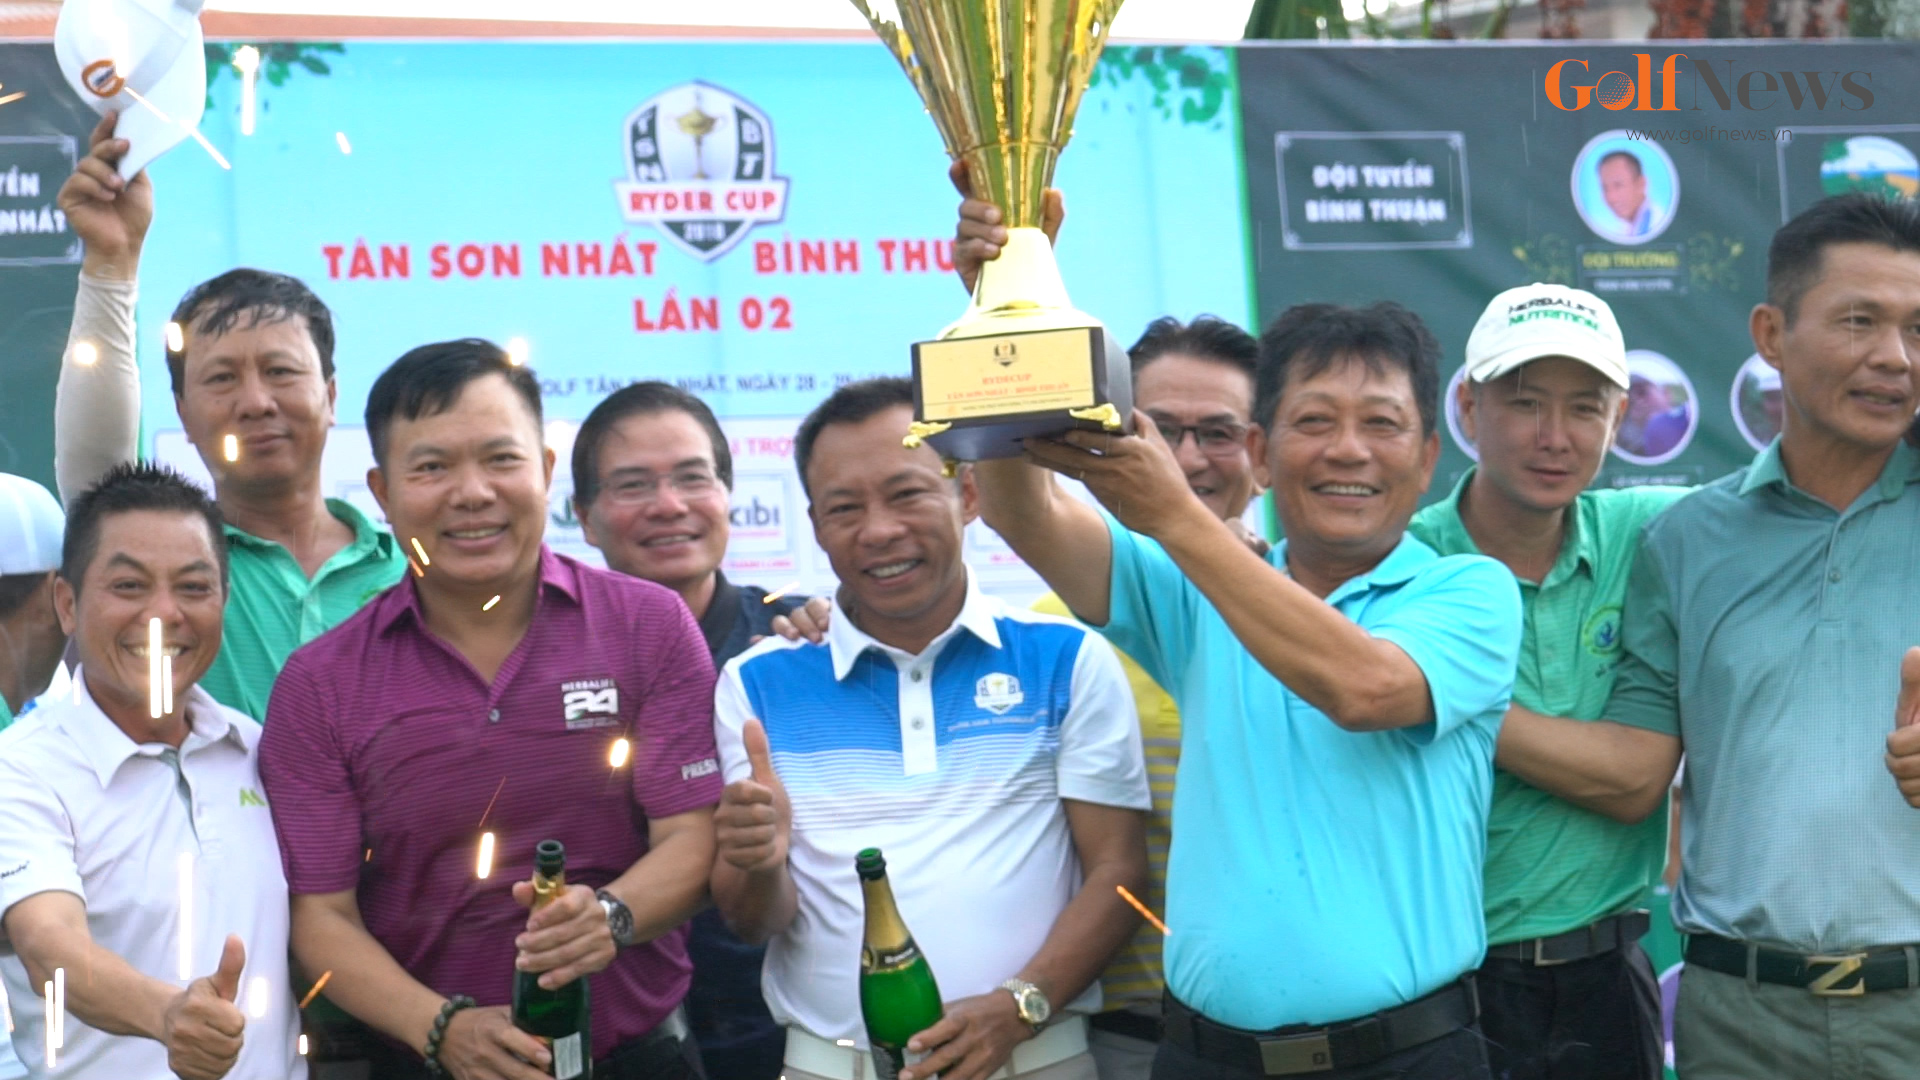 Tổng kết giải Ryder Cup Tân Sơn Nhất - Bình Thuận